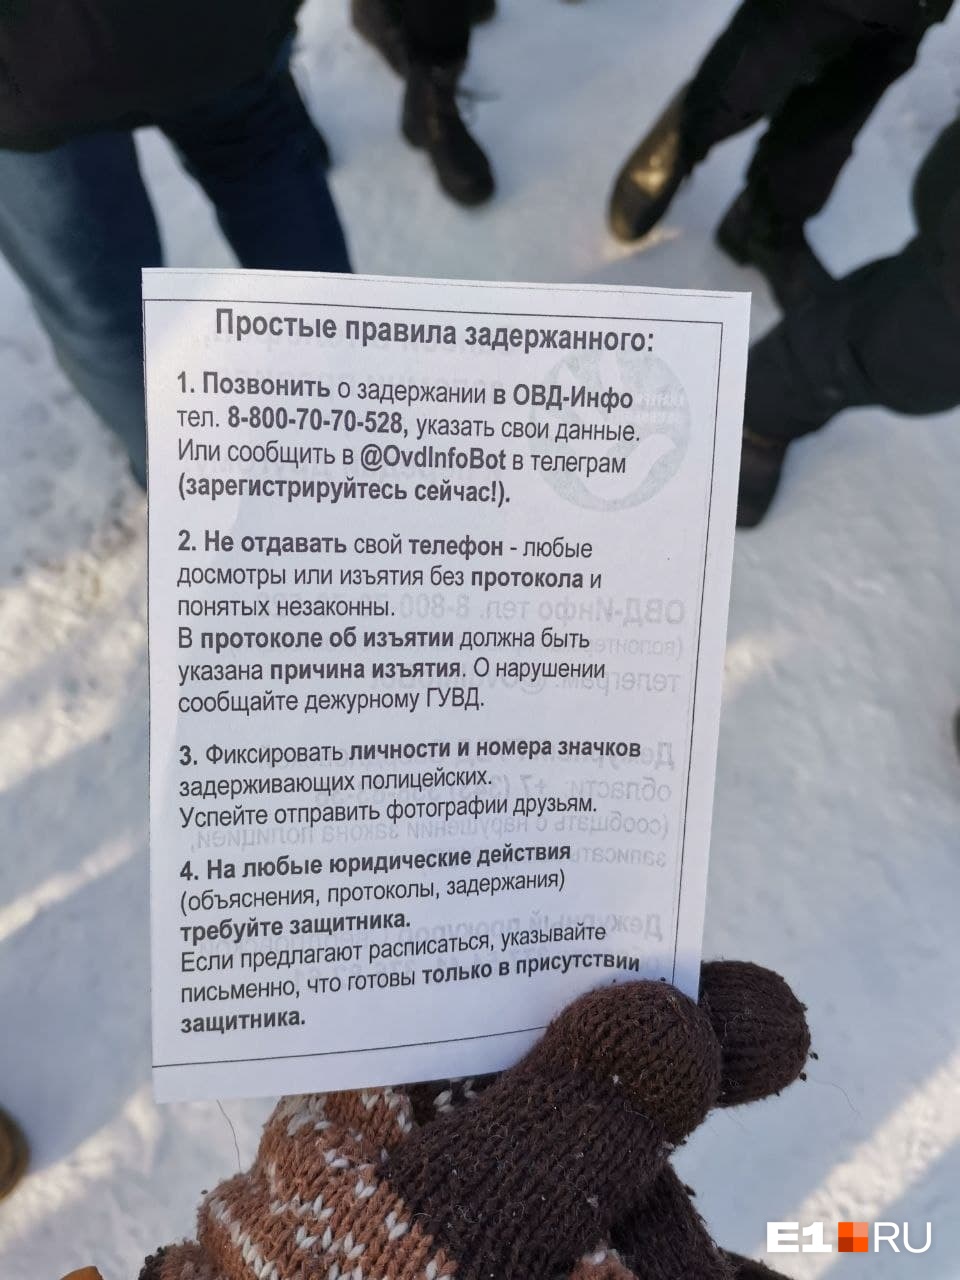 В начале акции протеста Анна Пастухова раздала участникам такие памятки. Возможно, некоторым они пригодились — полиция отчиталась о 14 задержанных